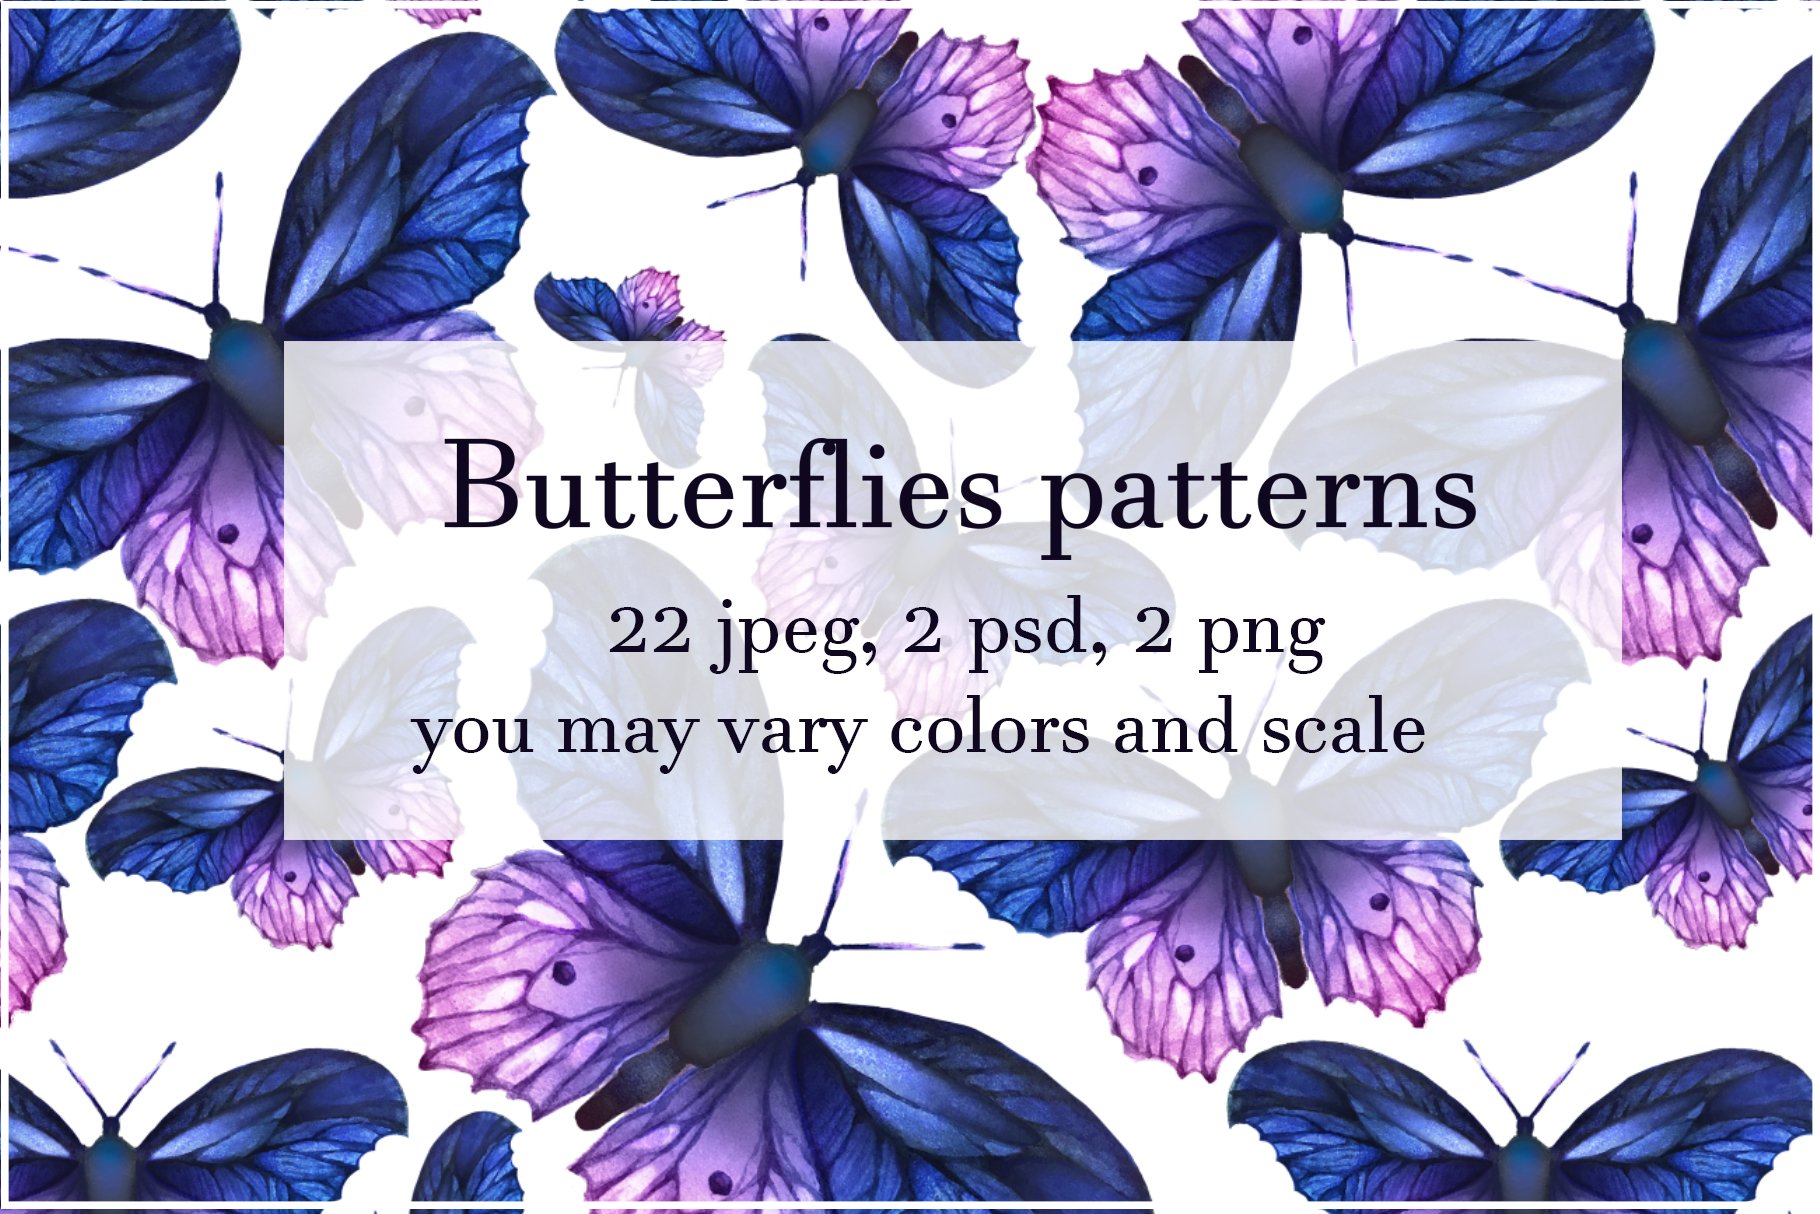 Seamless summer butterflies patterns cover image.